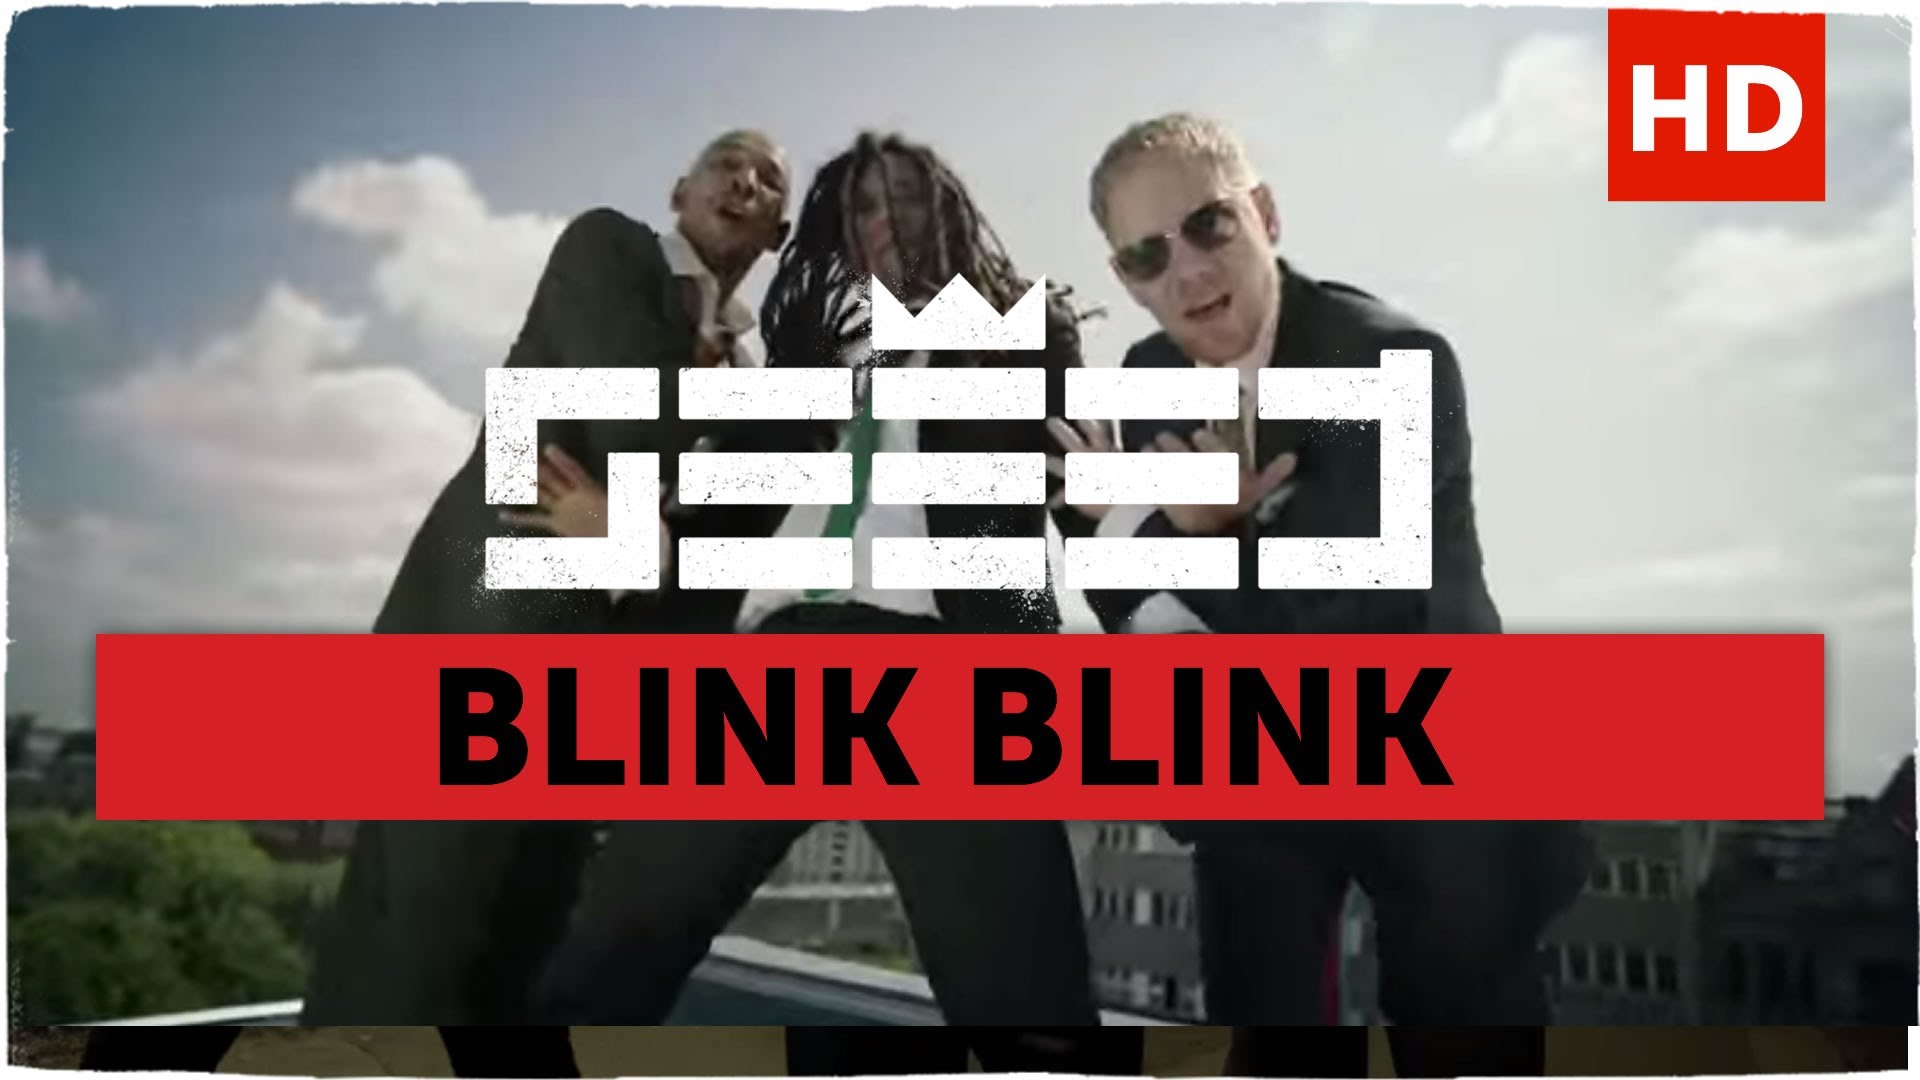 Seeed - Blink Blink [9/4/2013]